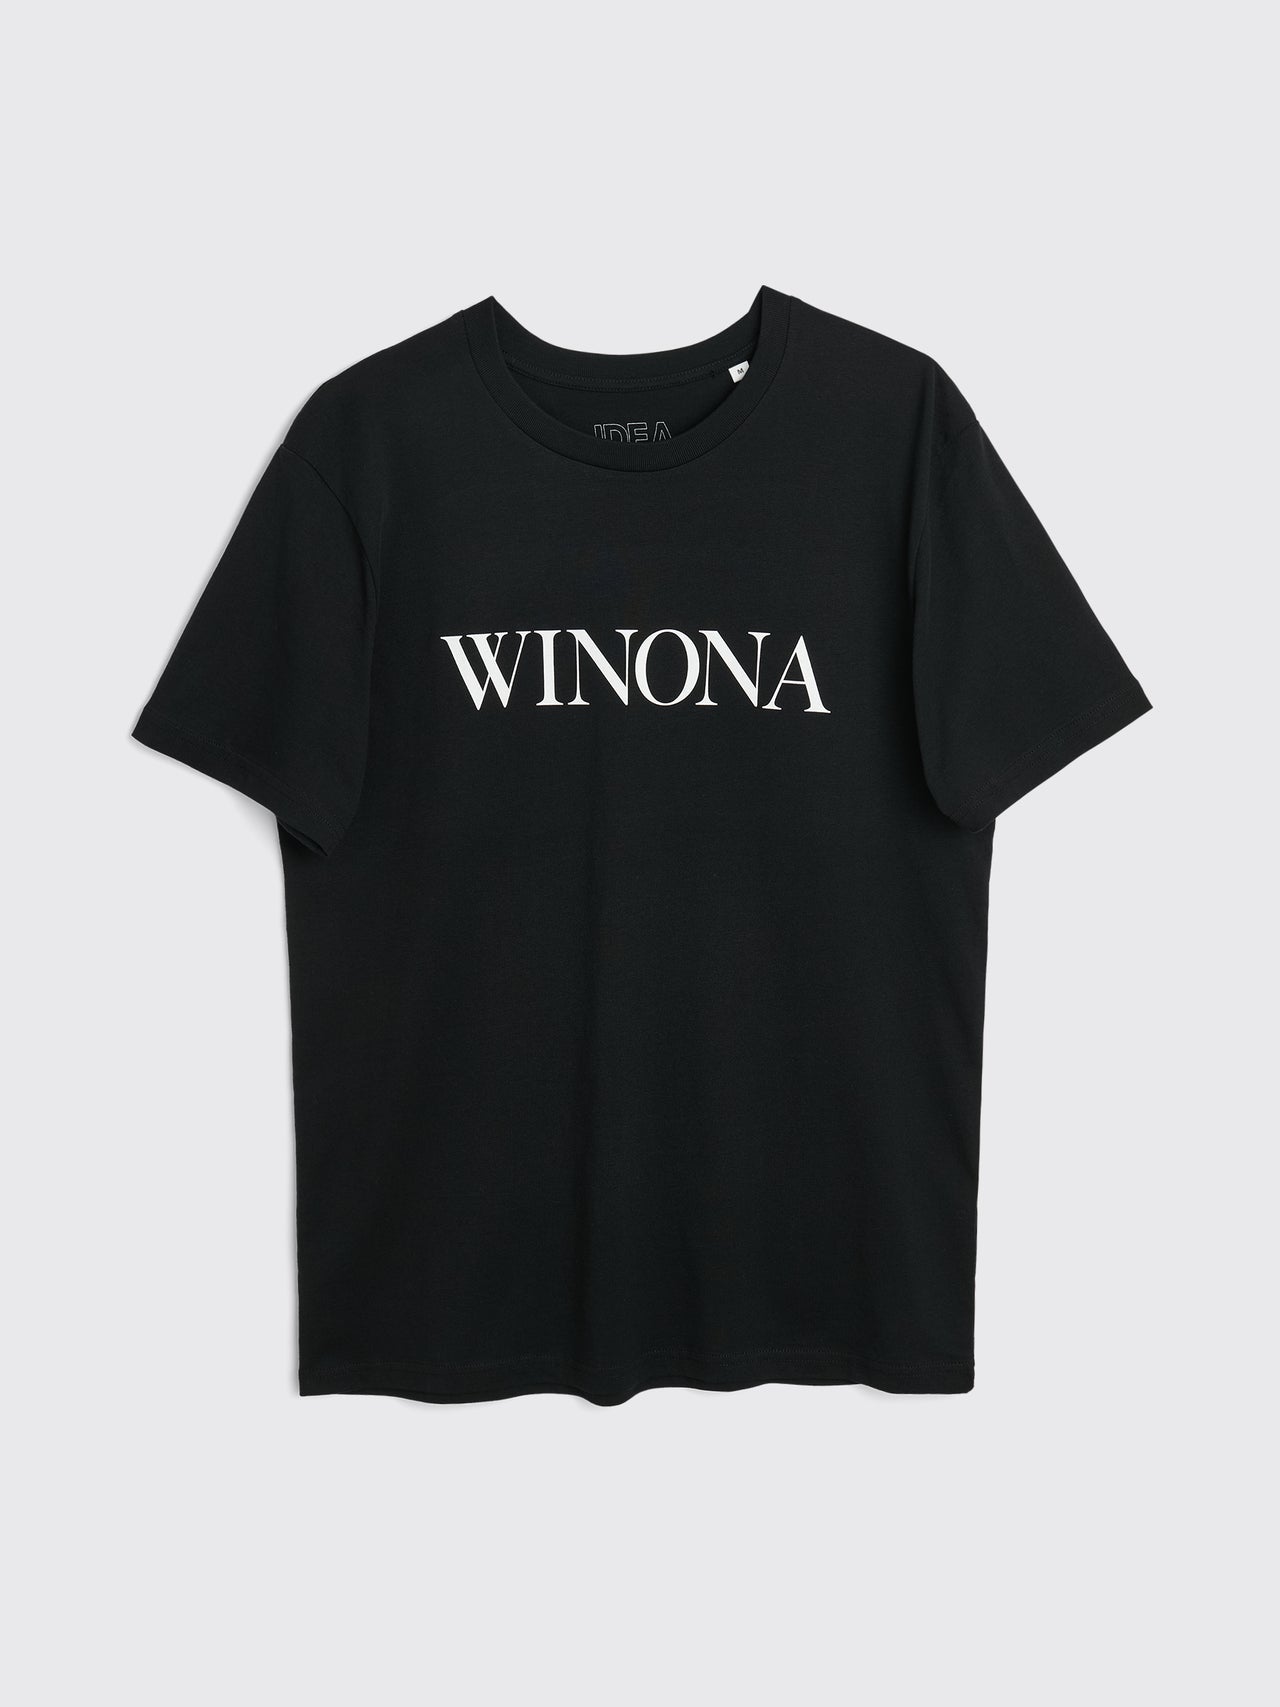 IDEA Winona T-shirt Black